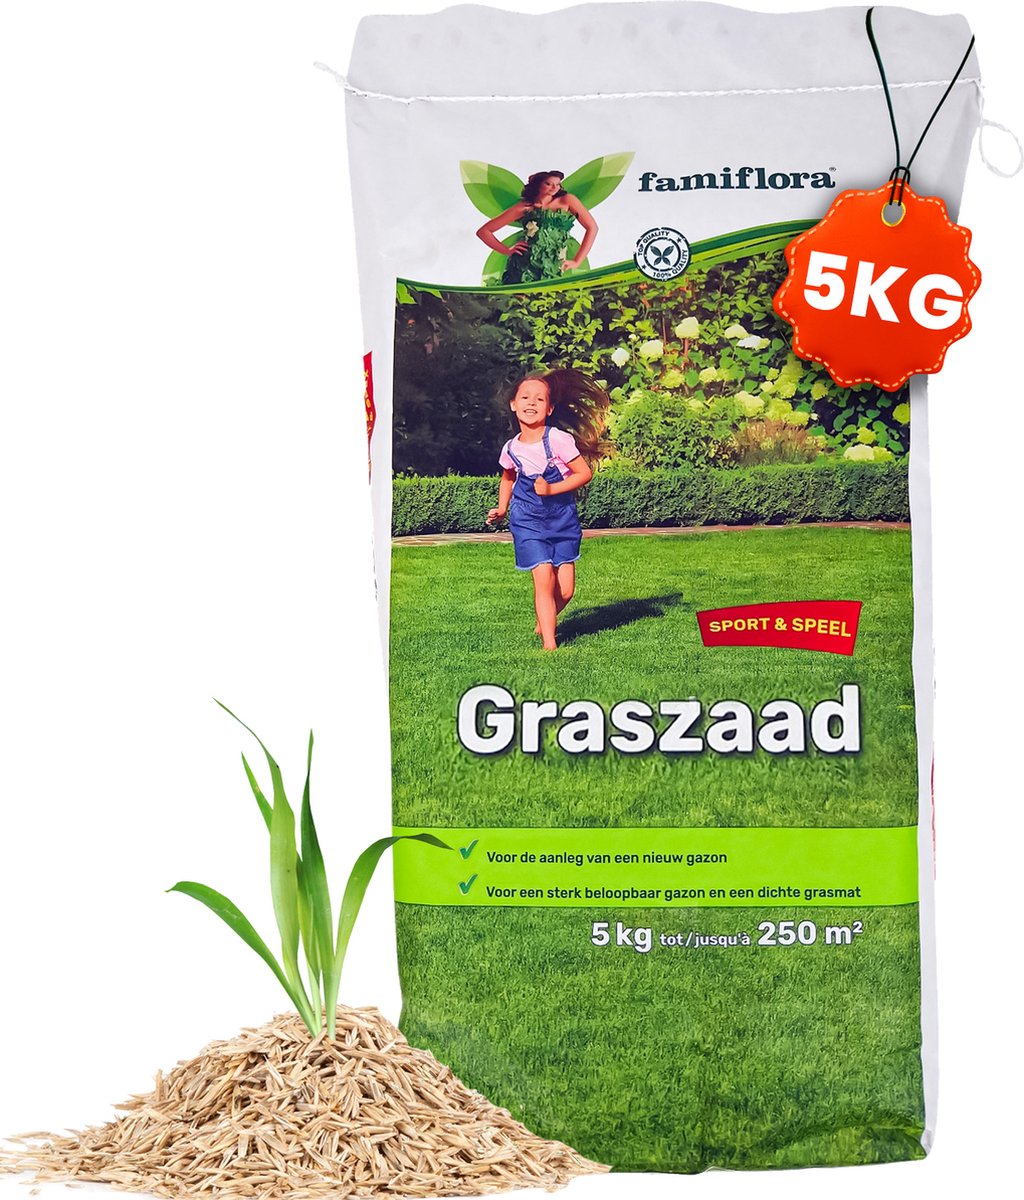 Famiflora Graszaad Speel & Sport - Sterk Graszaad voor Speelgazon en Sportgazon - 5 kg voor 250m² - Met Coating